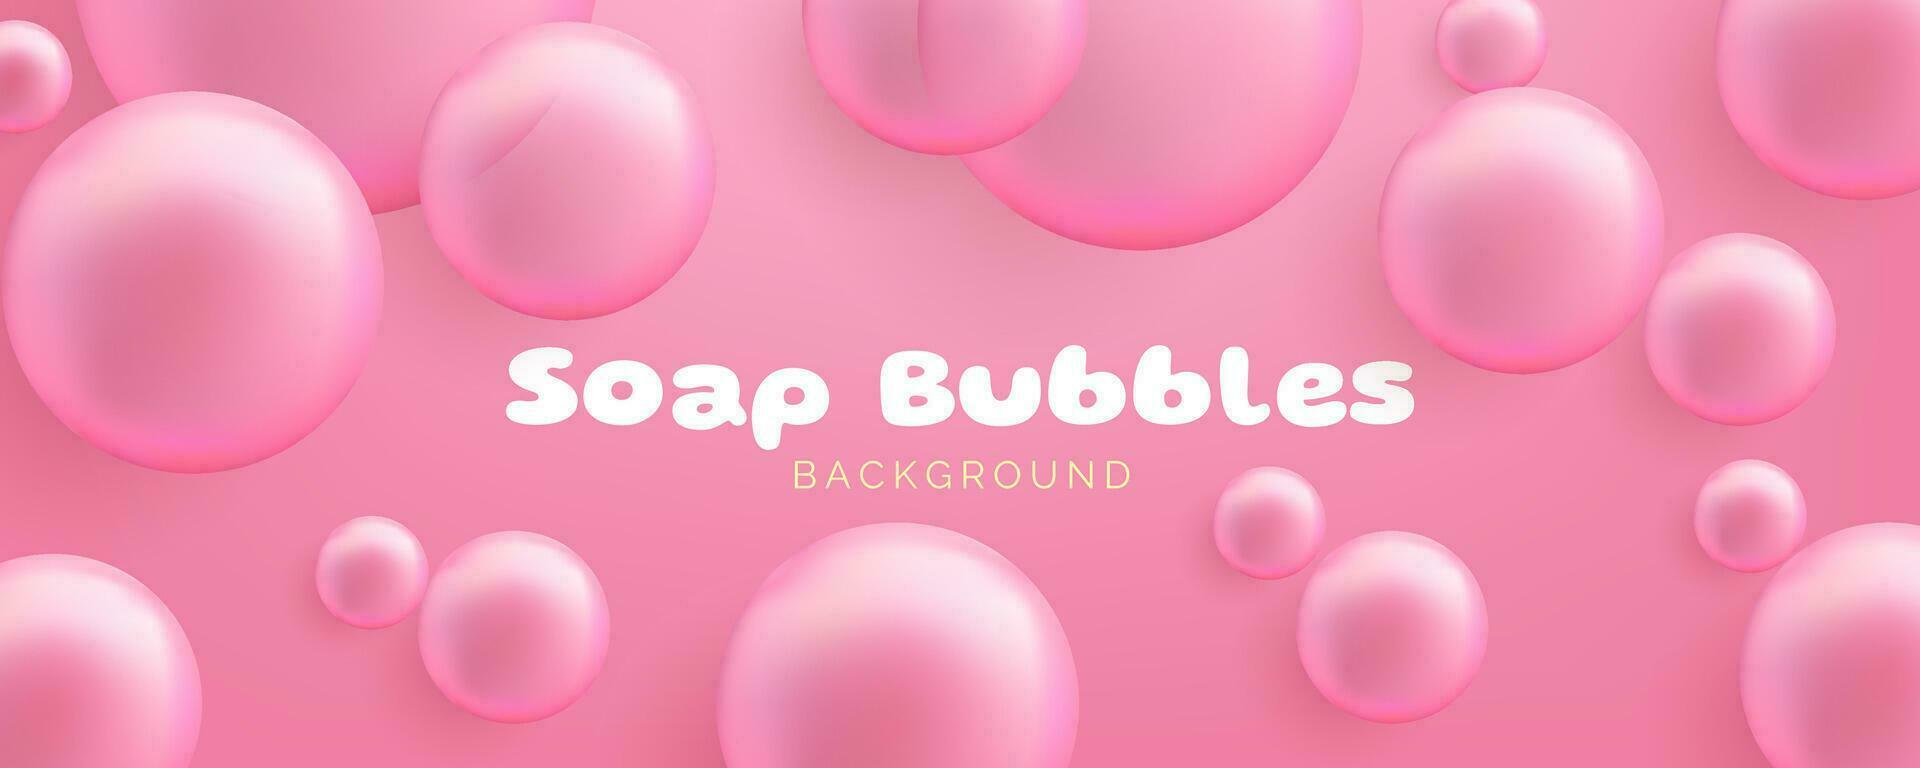 realistisch zeep bubbels. schattig bubbel gom spandoek. transparant bubbels met een glanzend roze oppervlak, overbrengen een schoon en luchtig concept. niet ai gegenereerd. vector